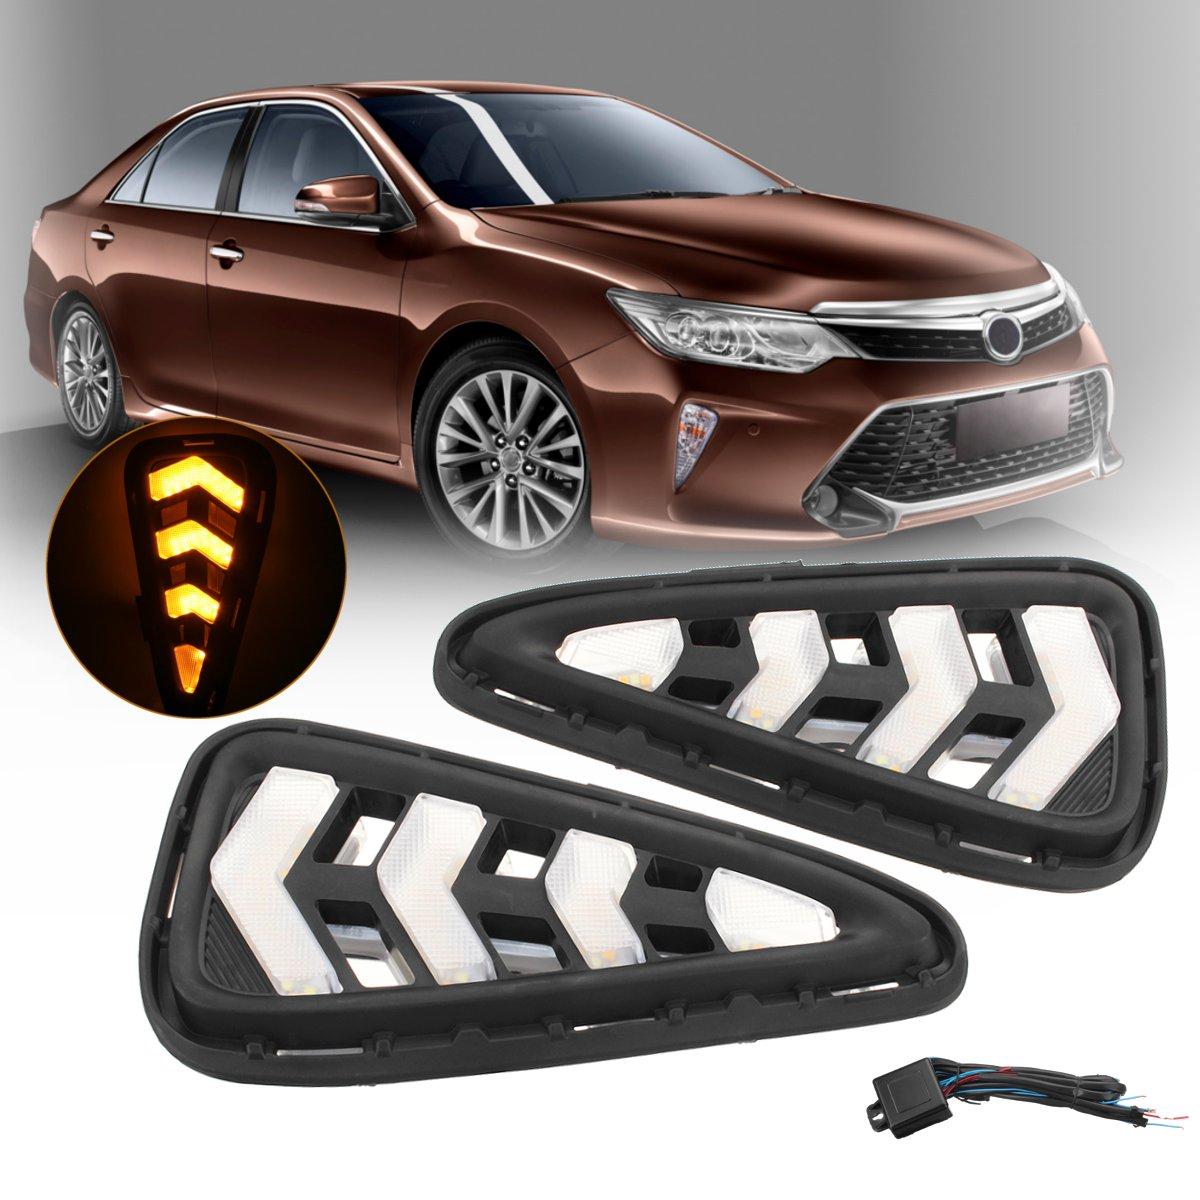 

Pair Front Авто LED DRL Дневные ходовые огни Противотуманные фары Лампы для Toyota Camry 2015-2017